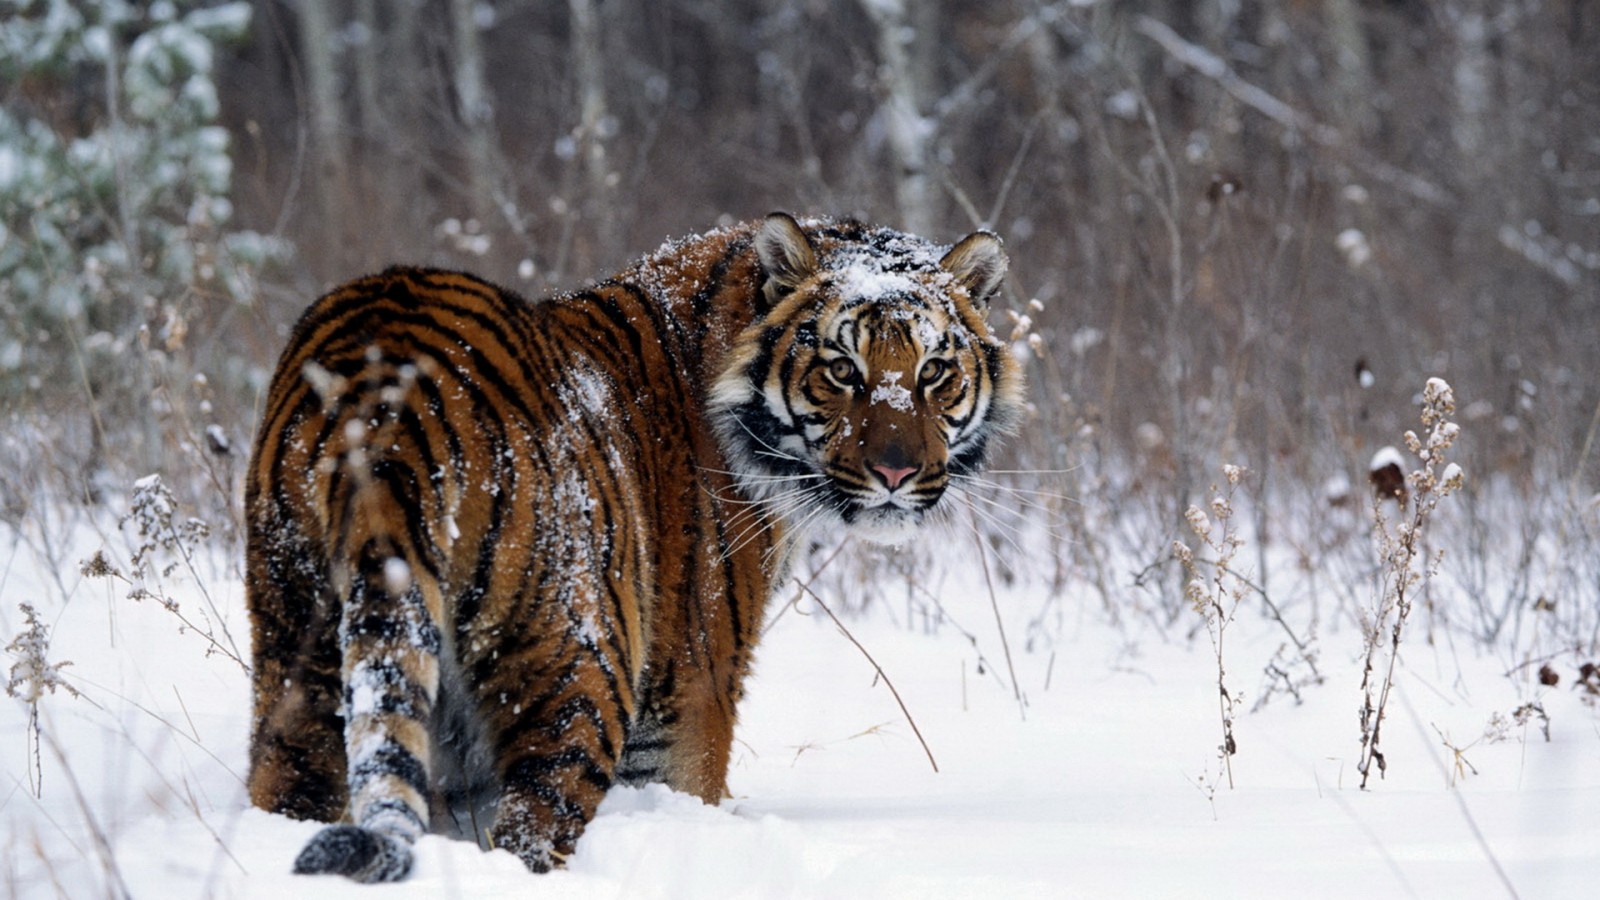 Tiger Winter Snow Wallpaper 792